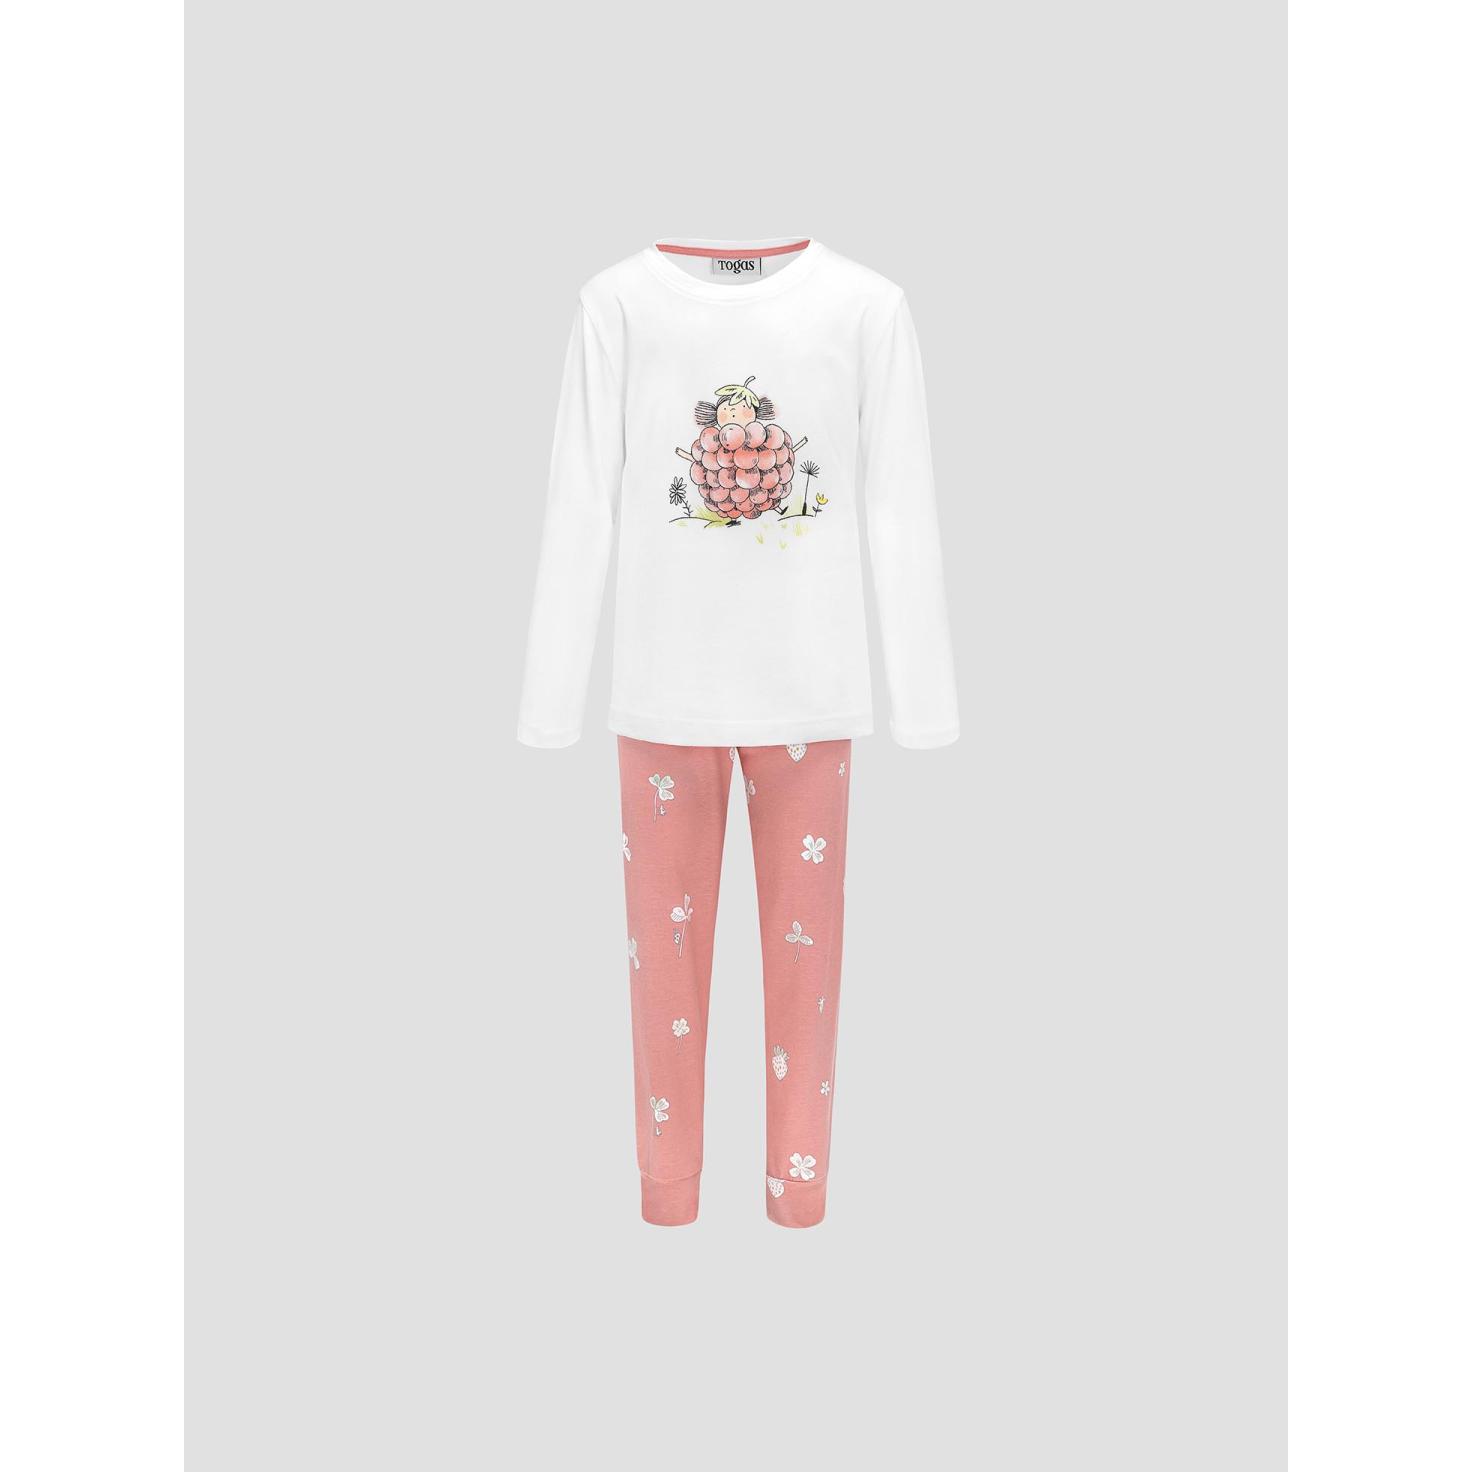 Пижама для девочек Kids by togas Стробби бело-розовый 104-110 см пижама для девочек kids by togas стробби бело розовый 116 122 см